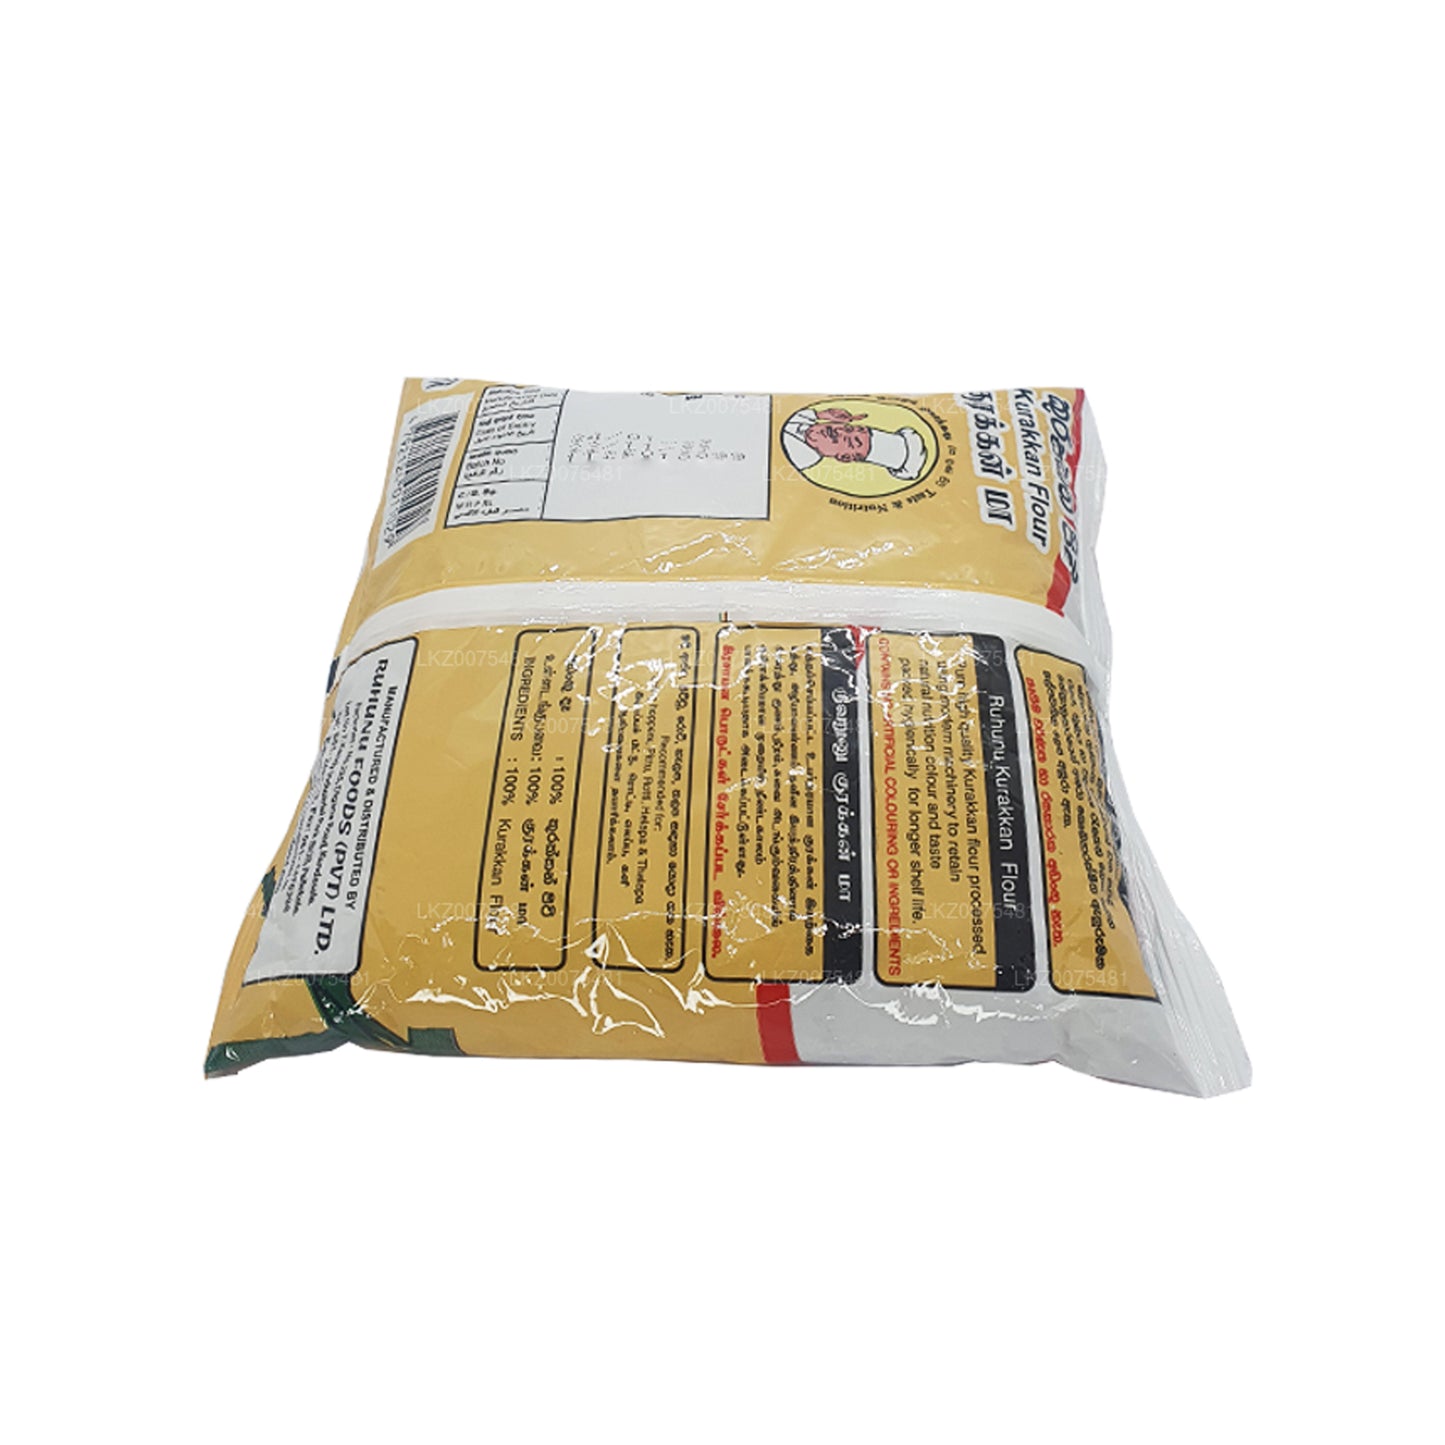 ルフヌクラッカン小麦粉 (400g)